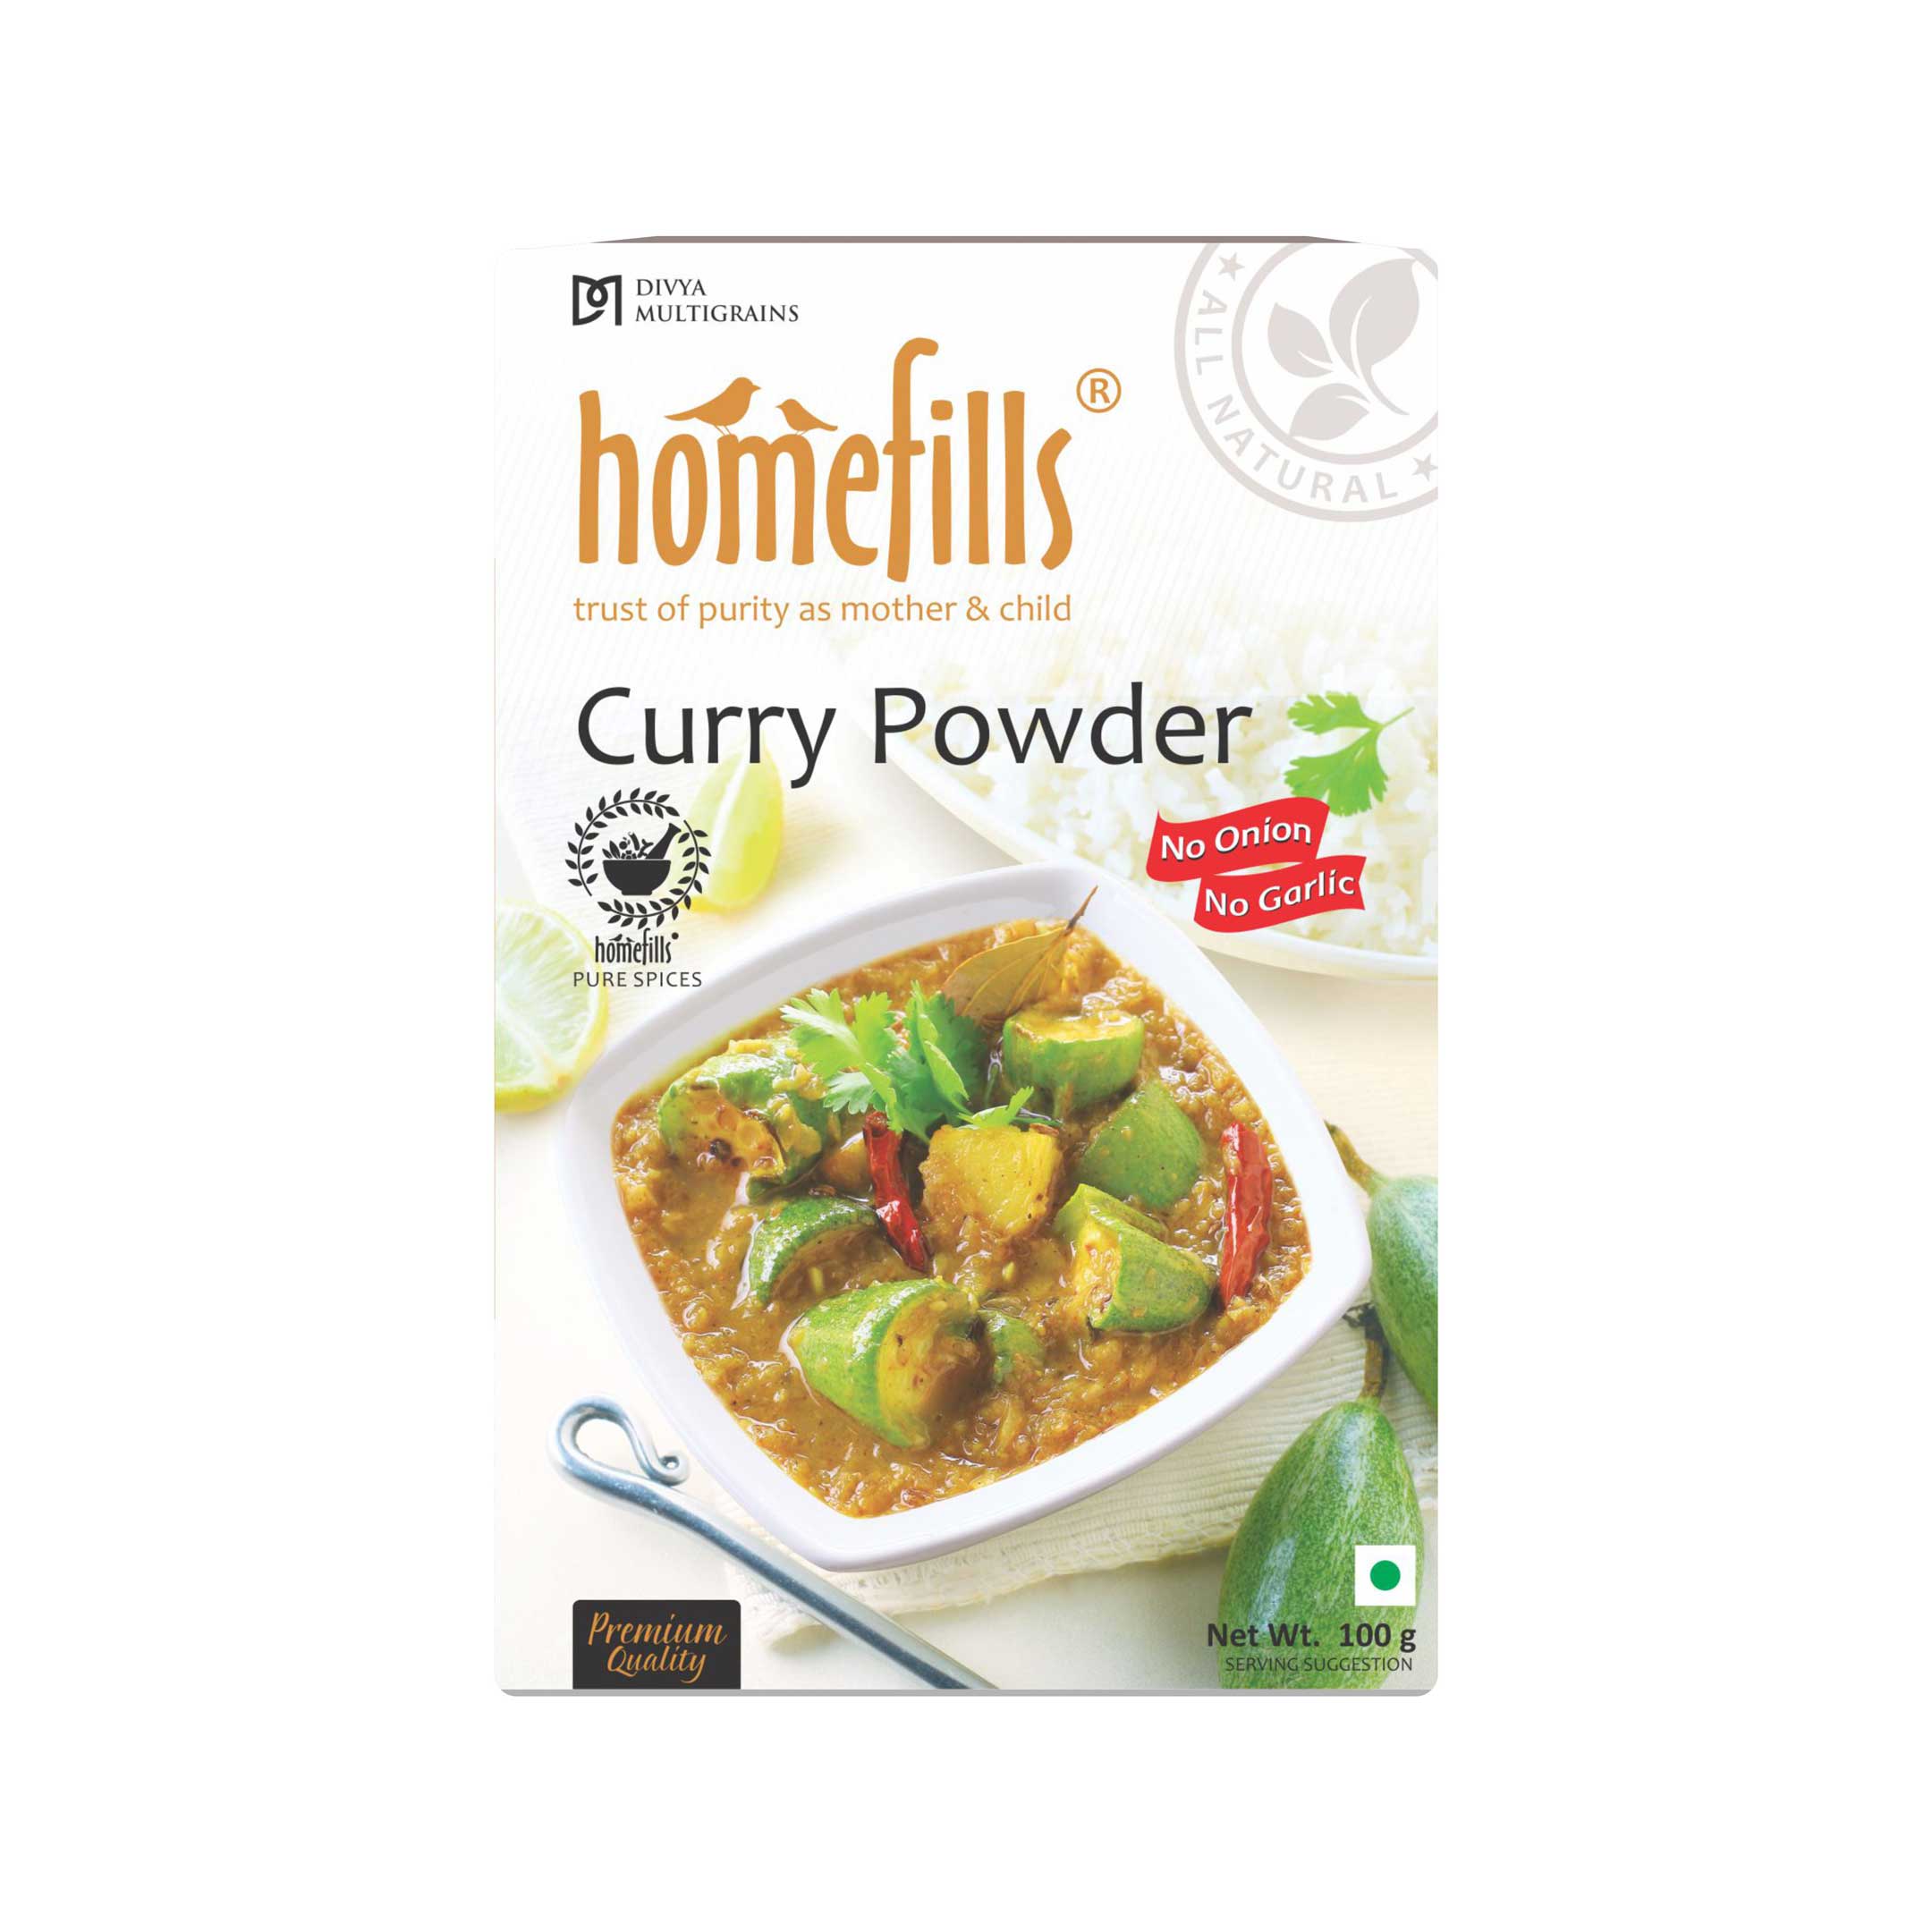 Homefills Curry Powder